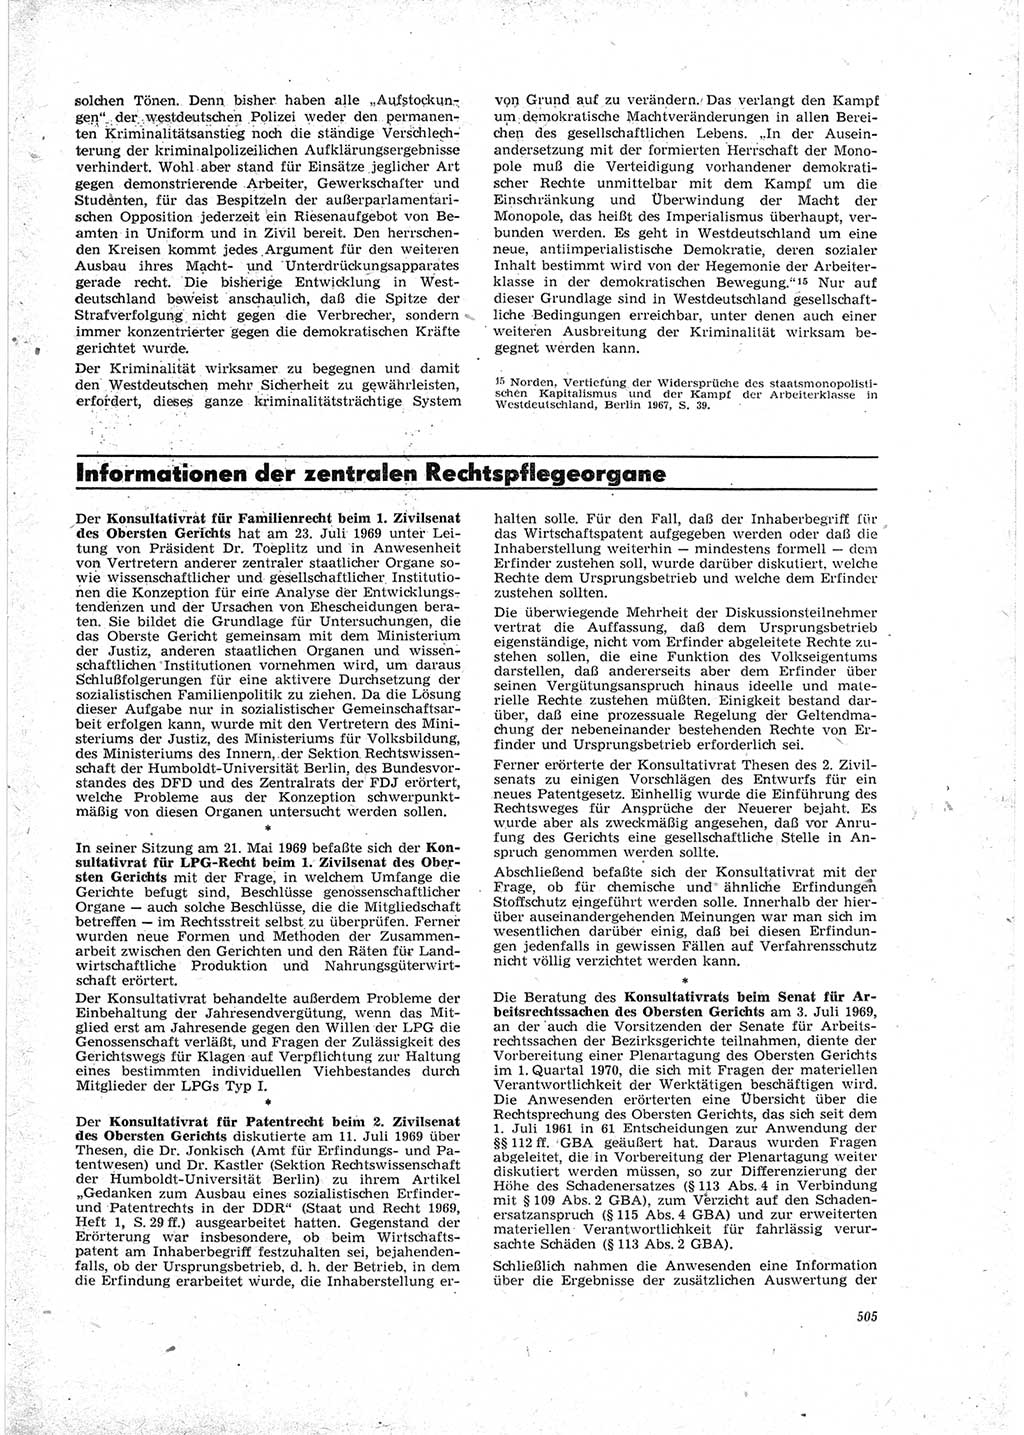 Neue Justiz (NJ), Zeitschrift für Recht und Rechtswissenschaft [Deutsche Demokratische Republik (DDR)], 23. Jahrgang 1969, Seite 505 (NJ DDR 1969, S. 505)